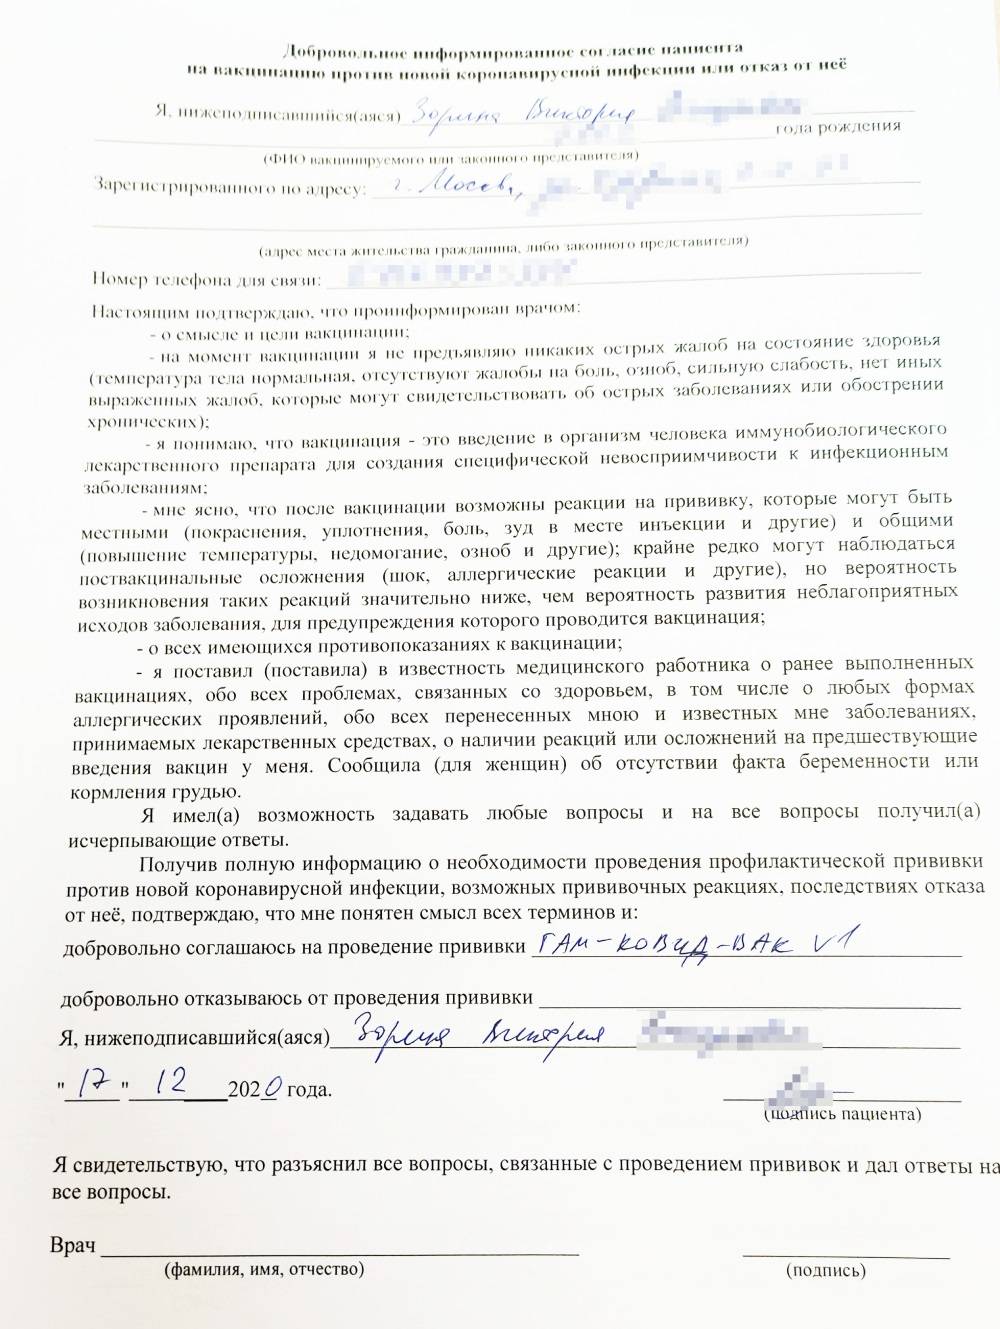 Как выглядит сертификат о прививке от коронавируса в московской области